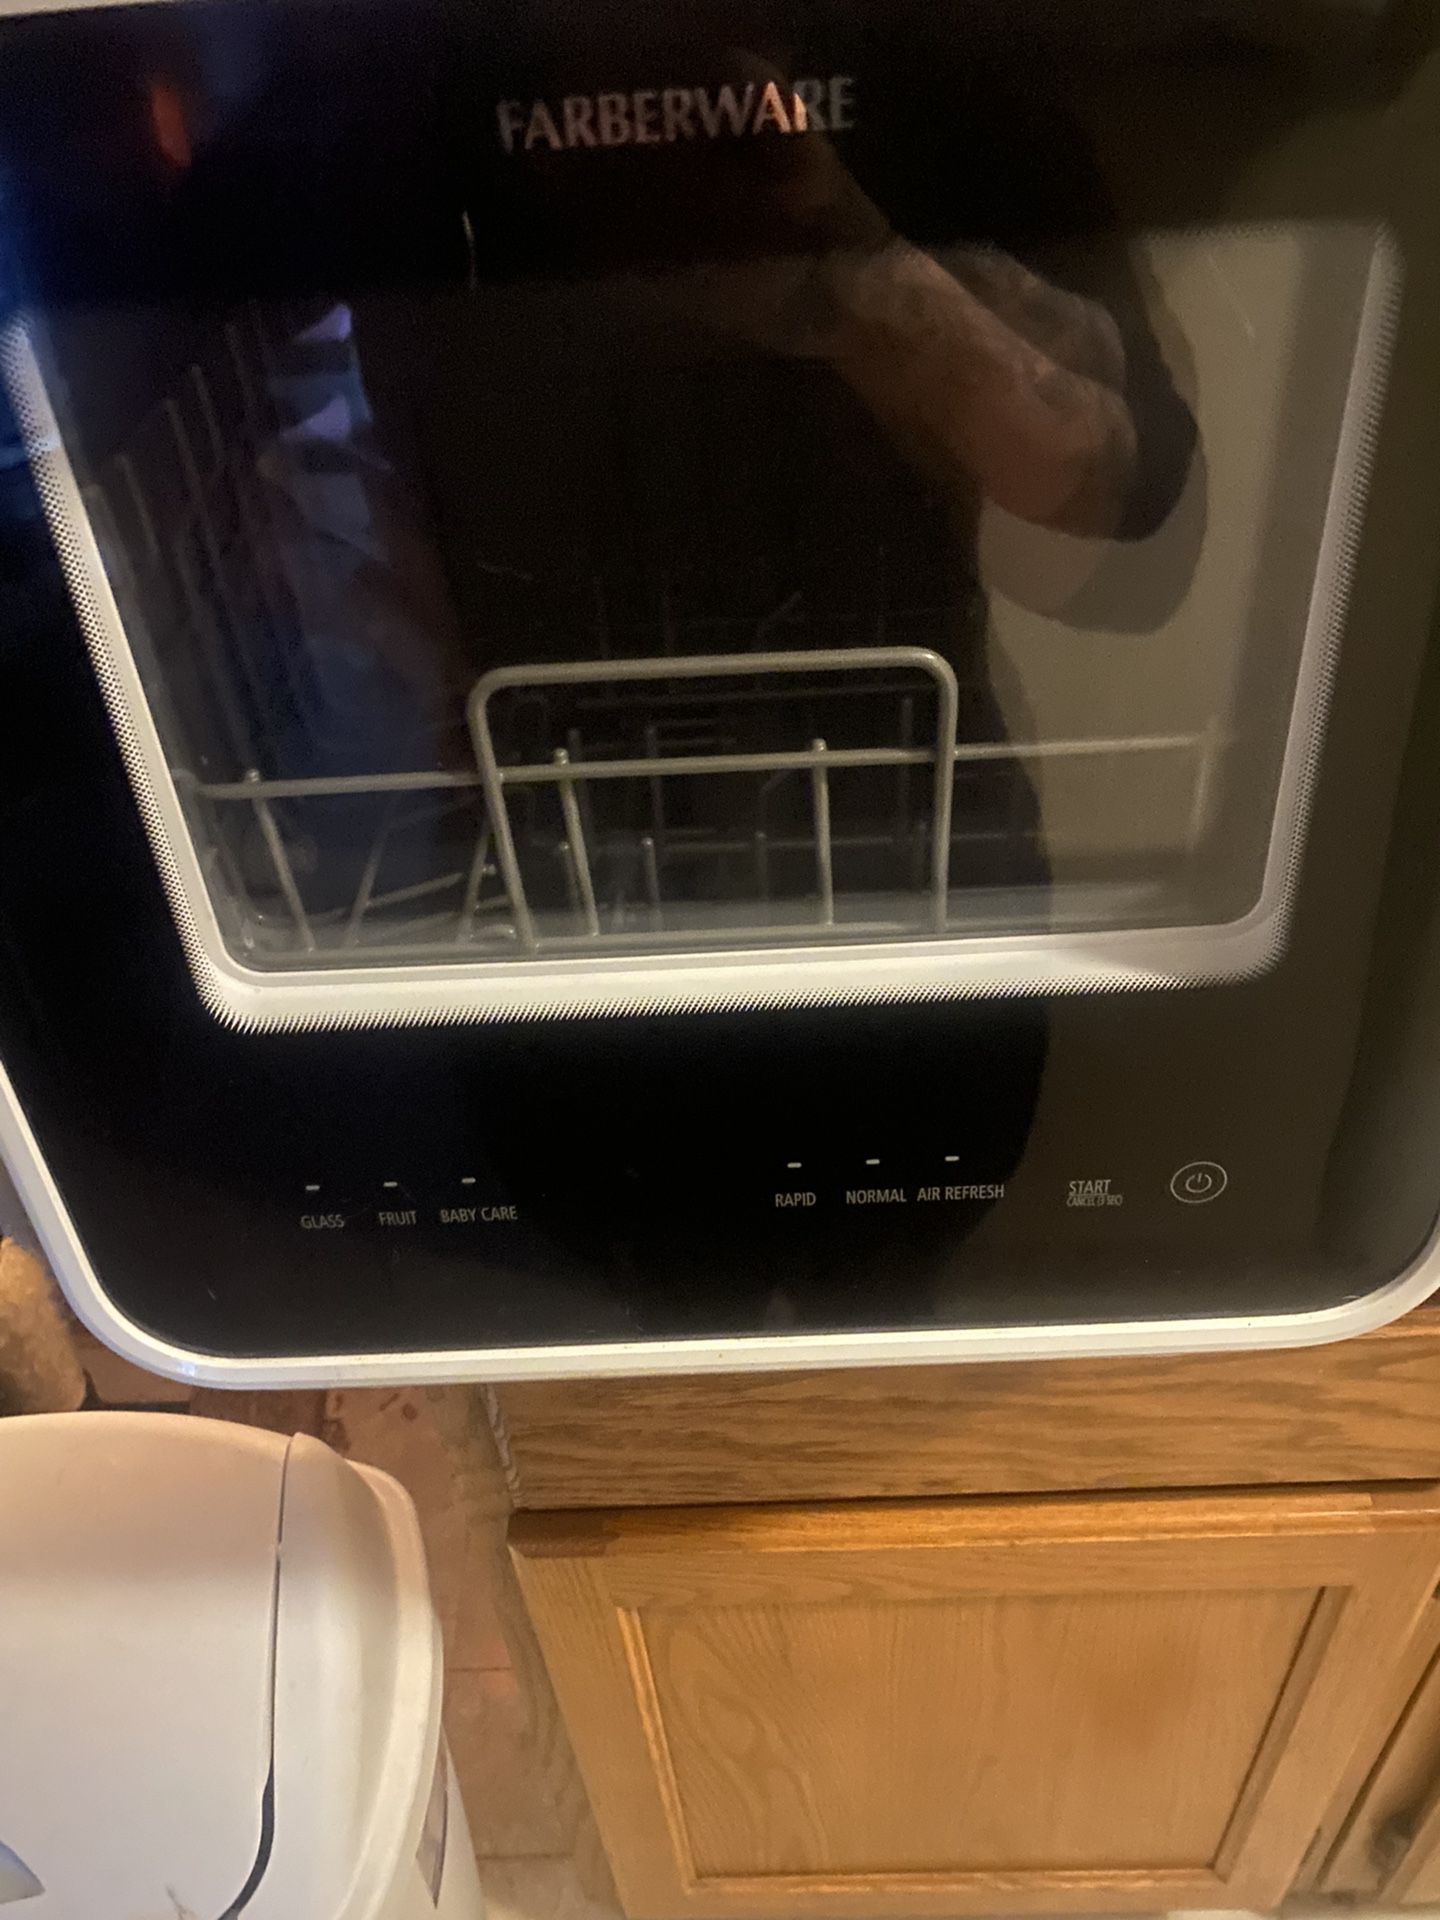 Dorm Style Dishwasher